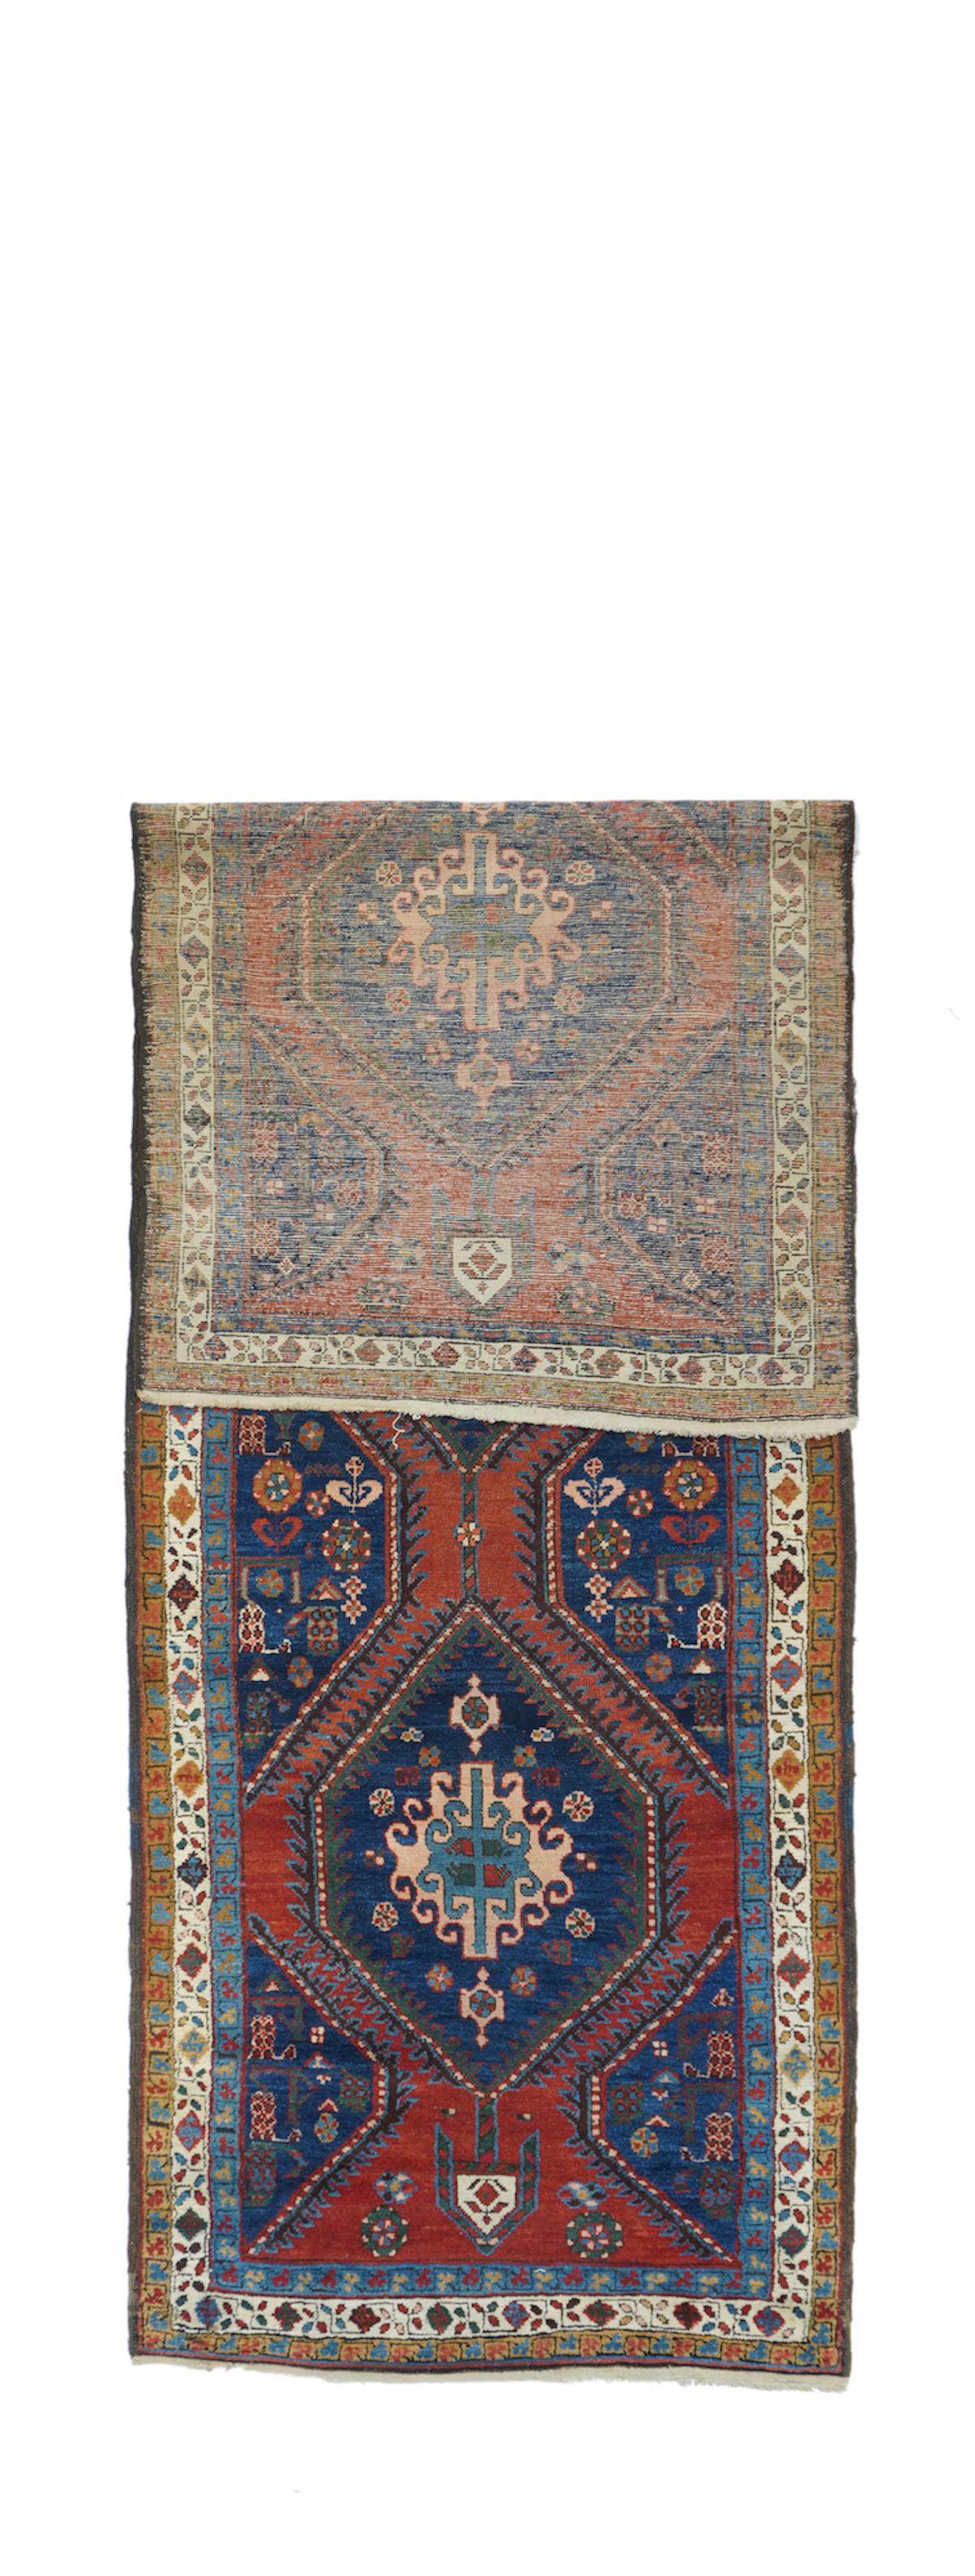 Antique Heriz rug, measures : 3'5'' x 11'8''.